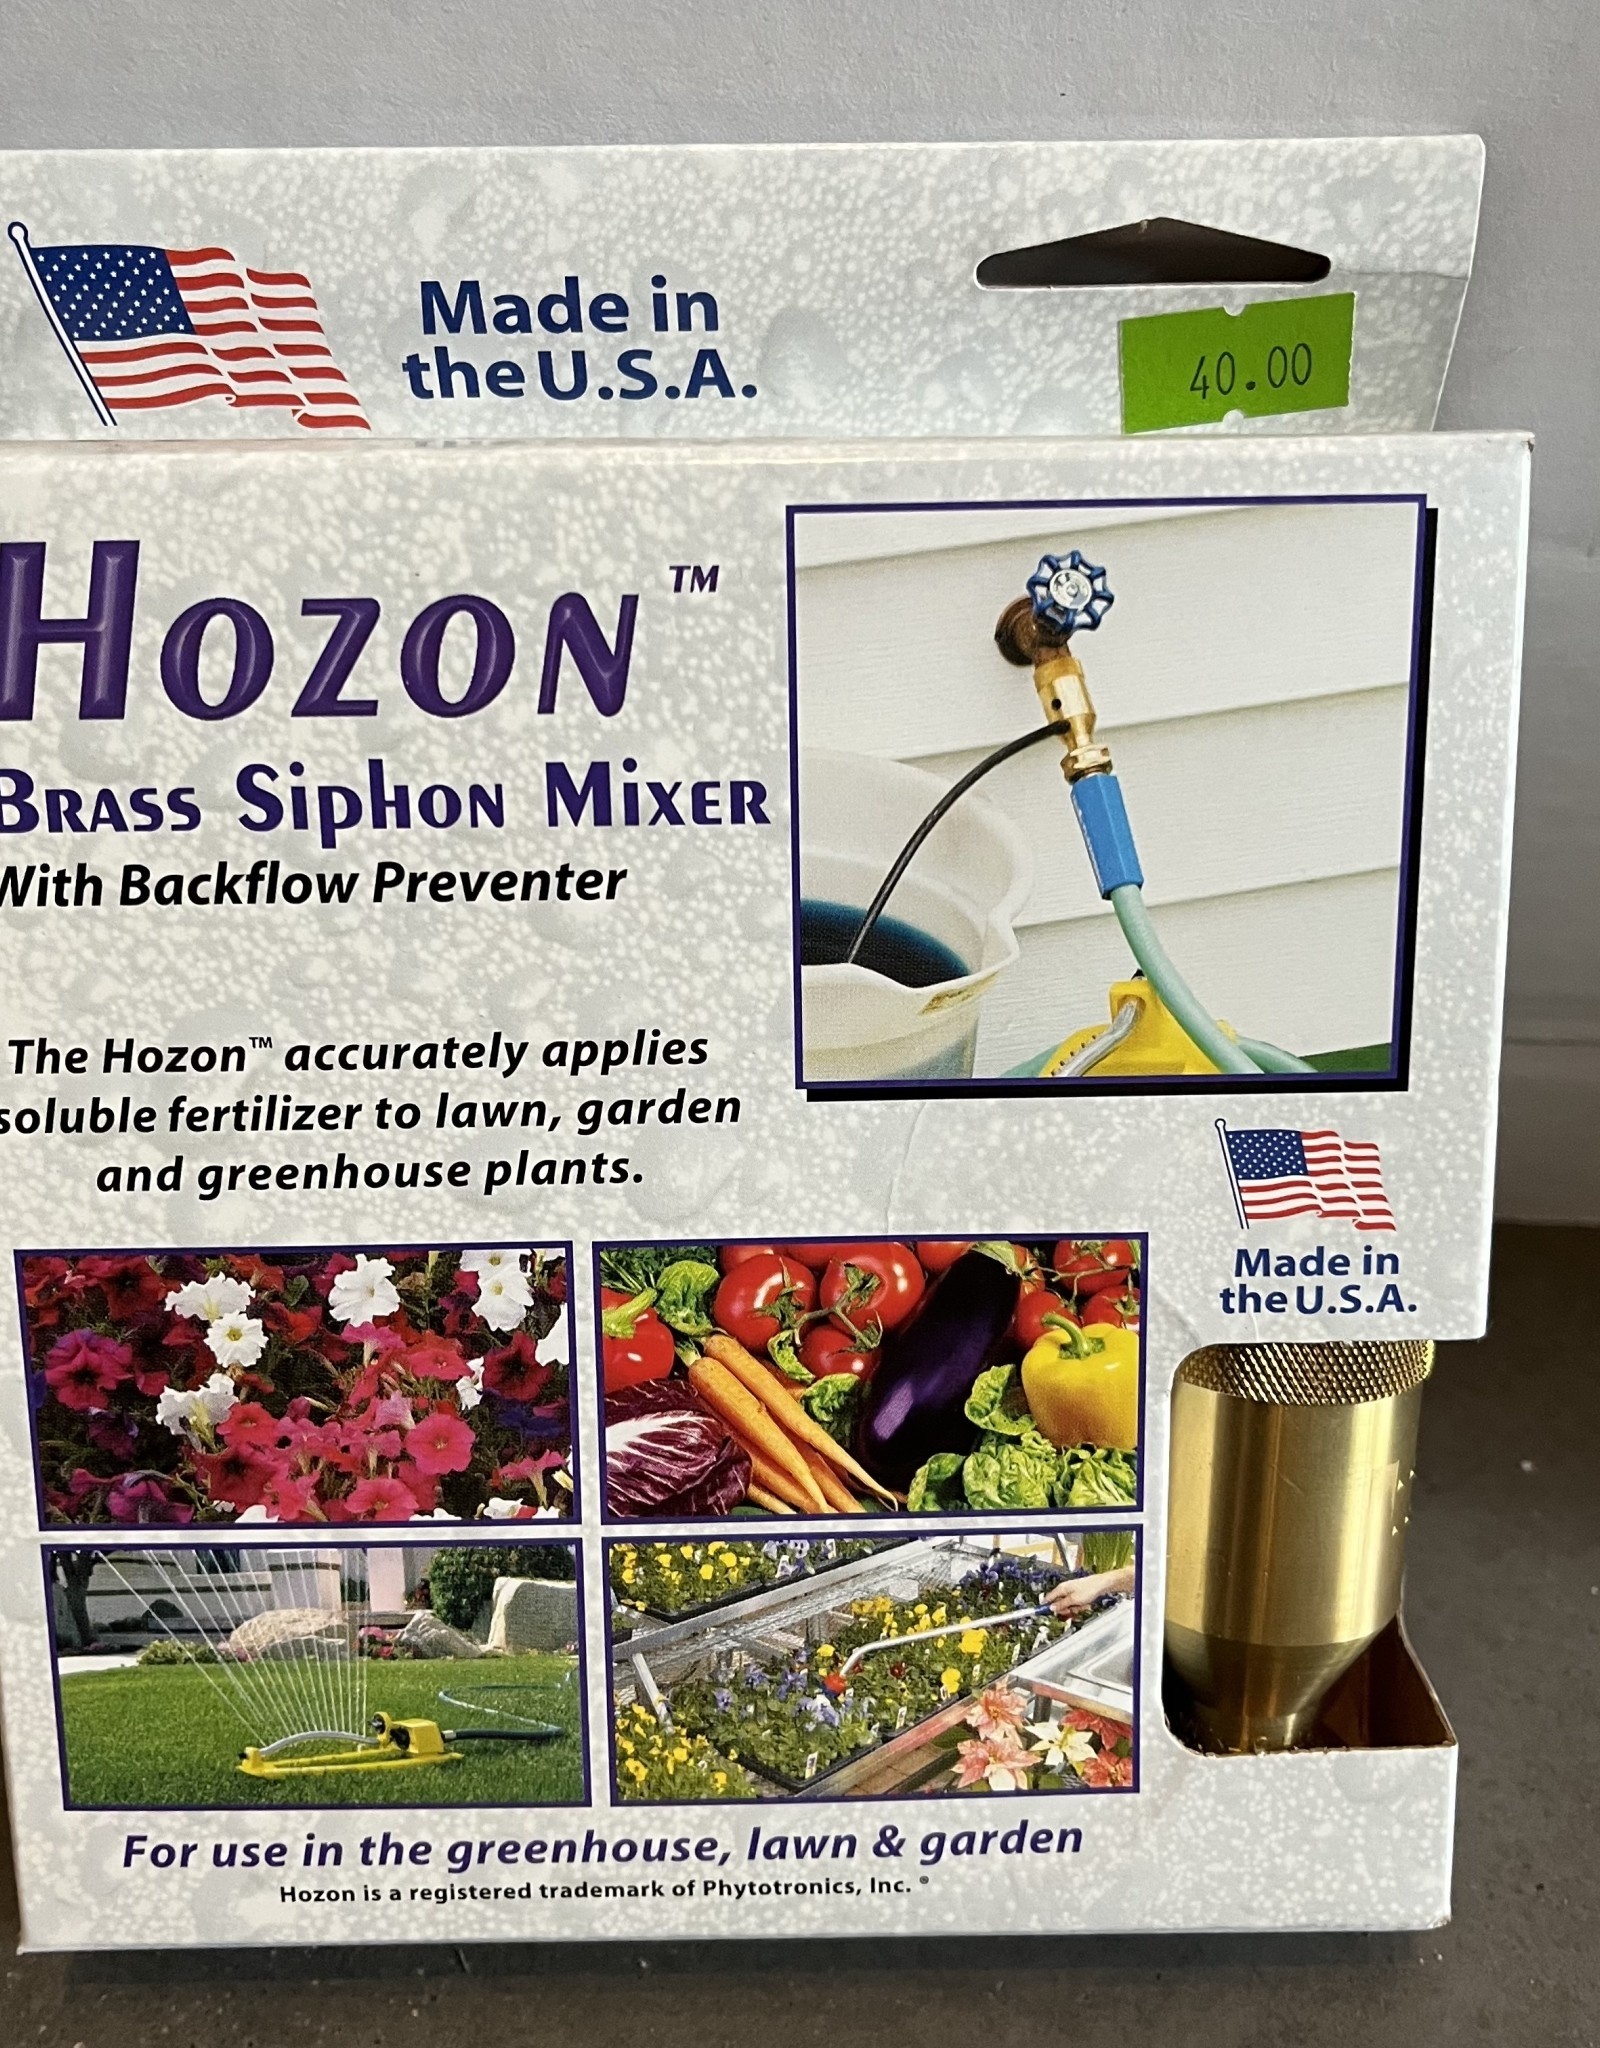 Jack's Hozon Brass Siphon Mixer